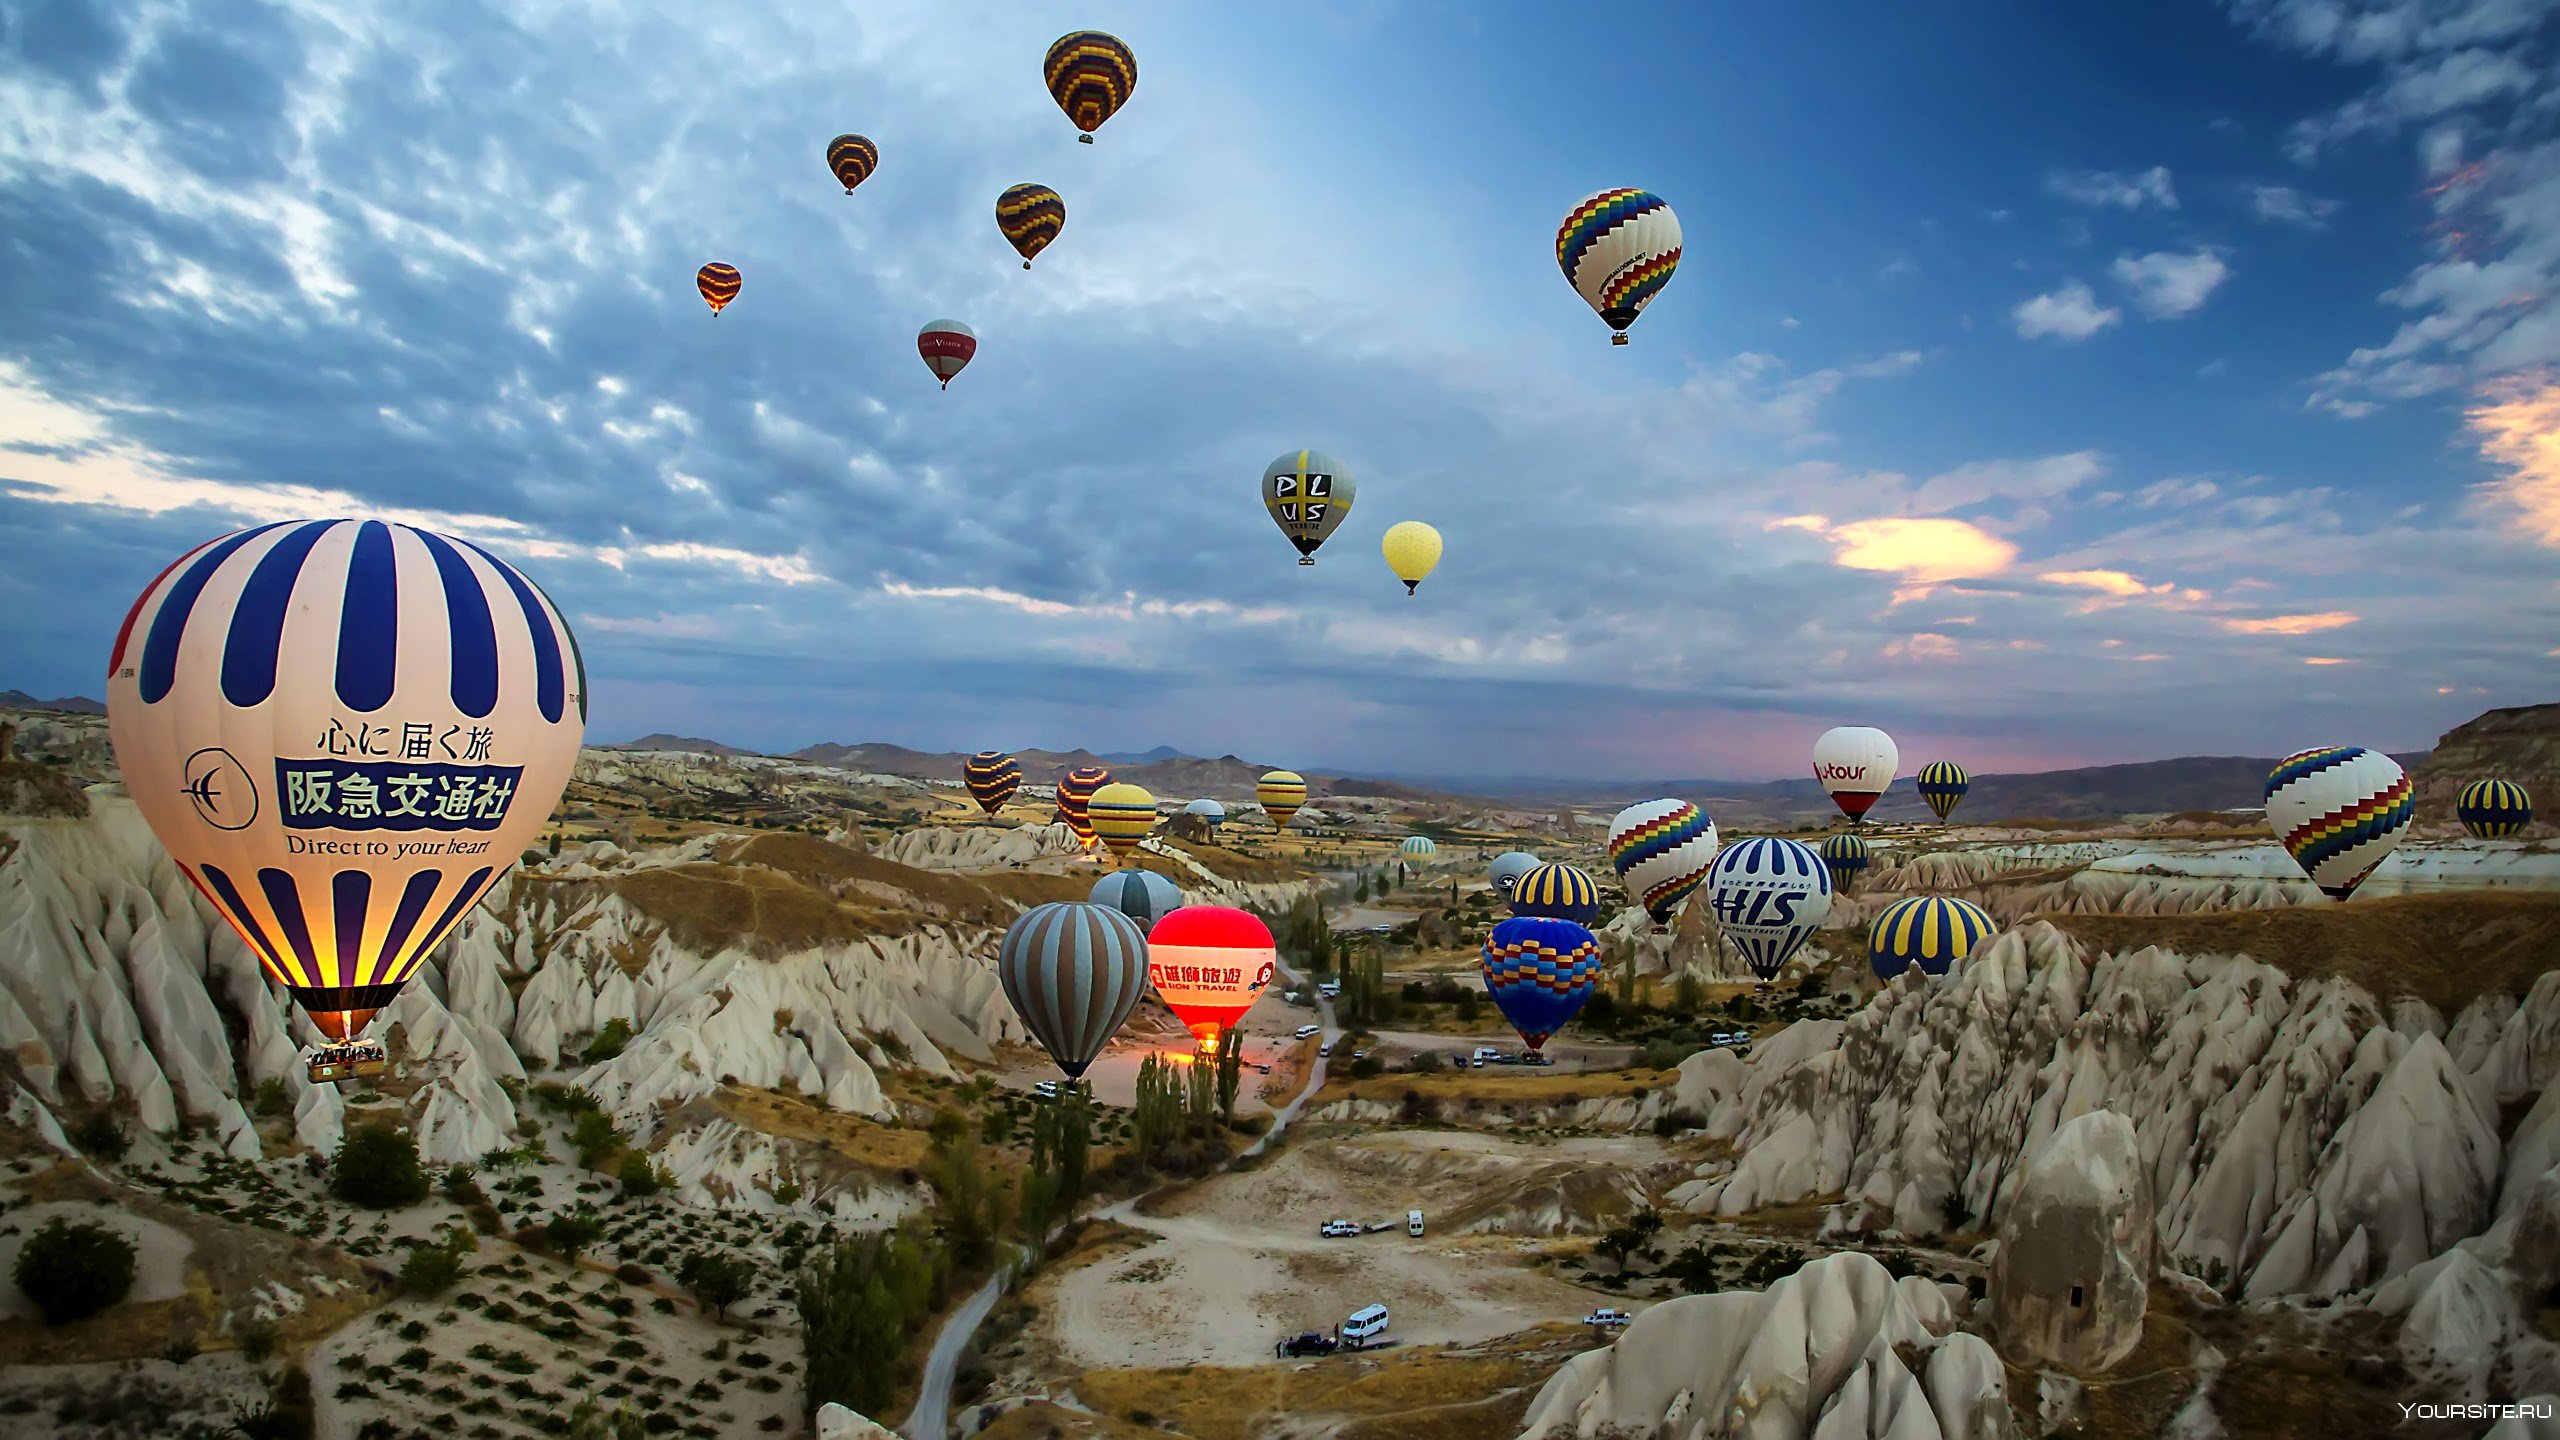 турция и воздушные шары